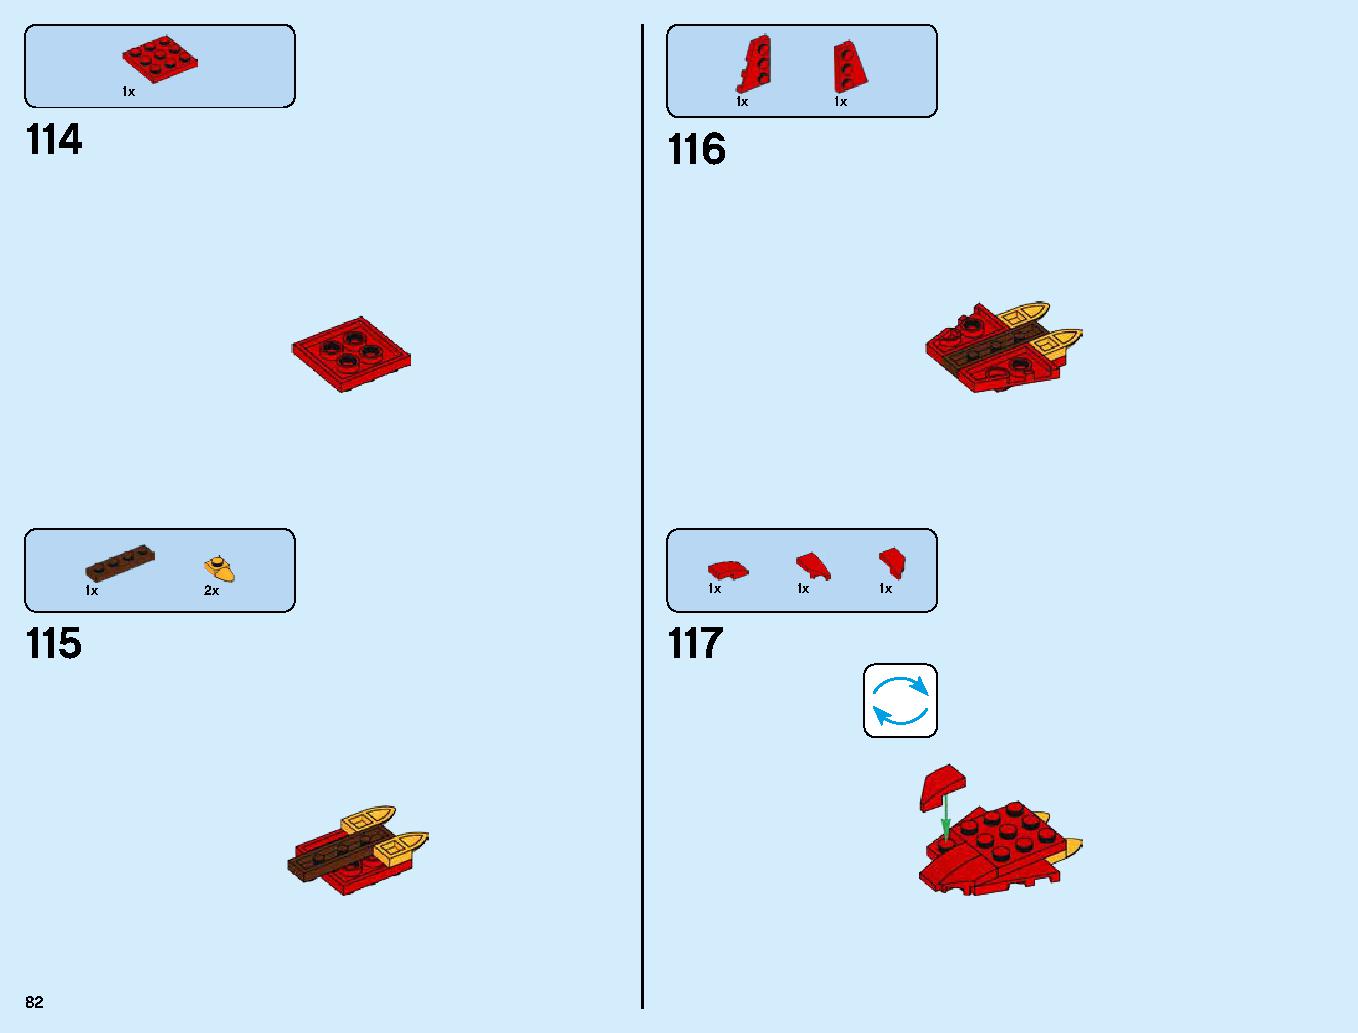 伝説のエレメントドラゴン：メリュジーナ 70653 レゴの商品情報 レゴの説明書・組立方法 82 page